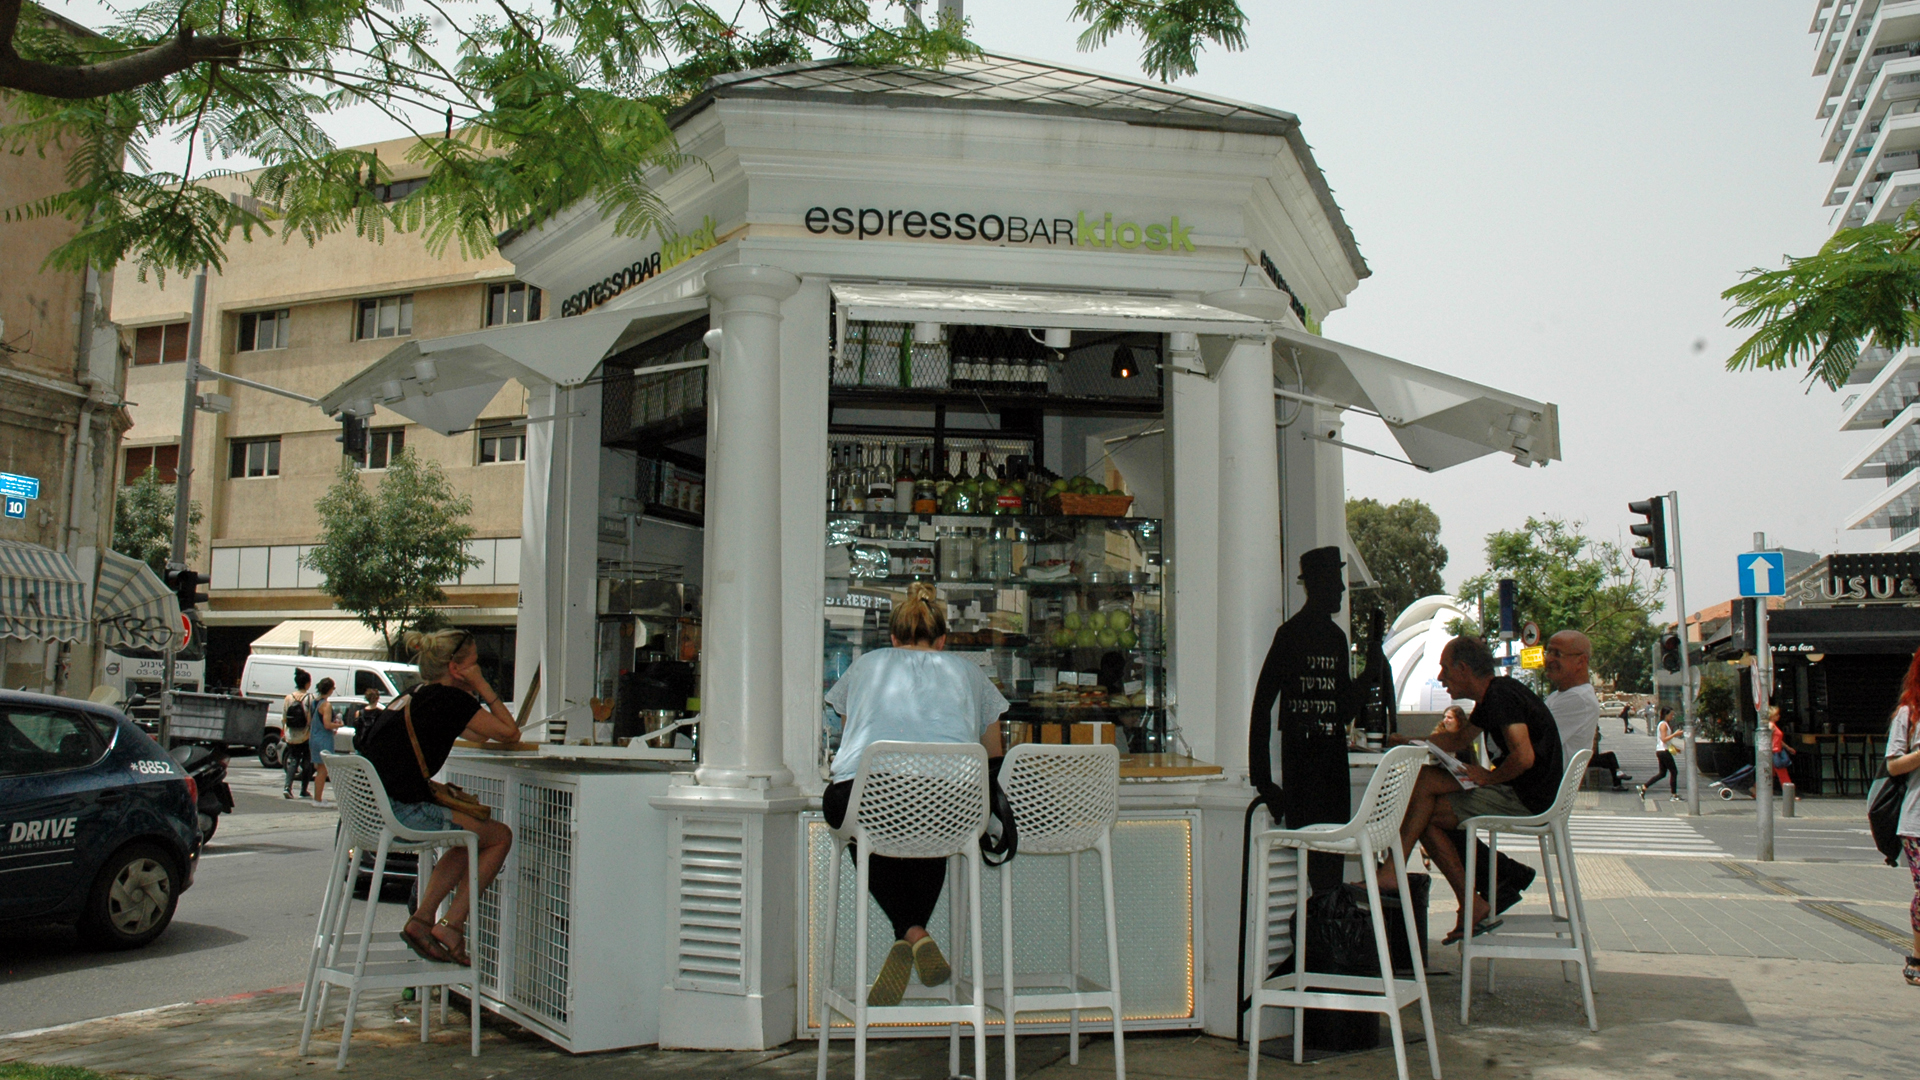 Im Jahr 1909 gehörte der Erste Kiosk von Tel Aviv zur Grundversorgung. Heute ist er eine mondäne Espresso-Bar.